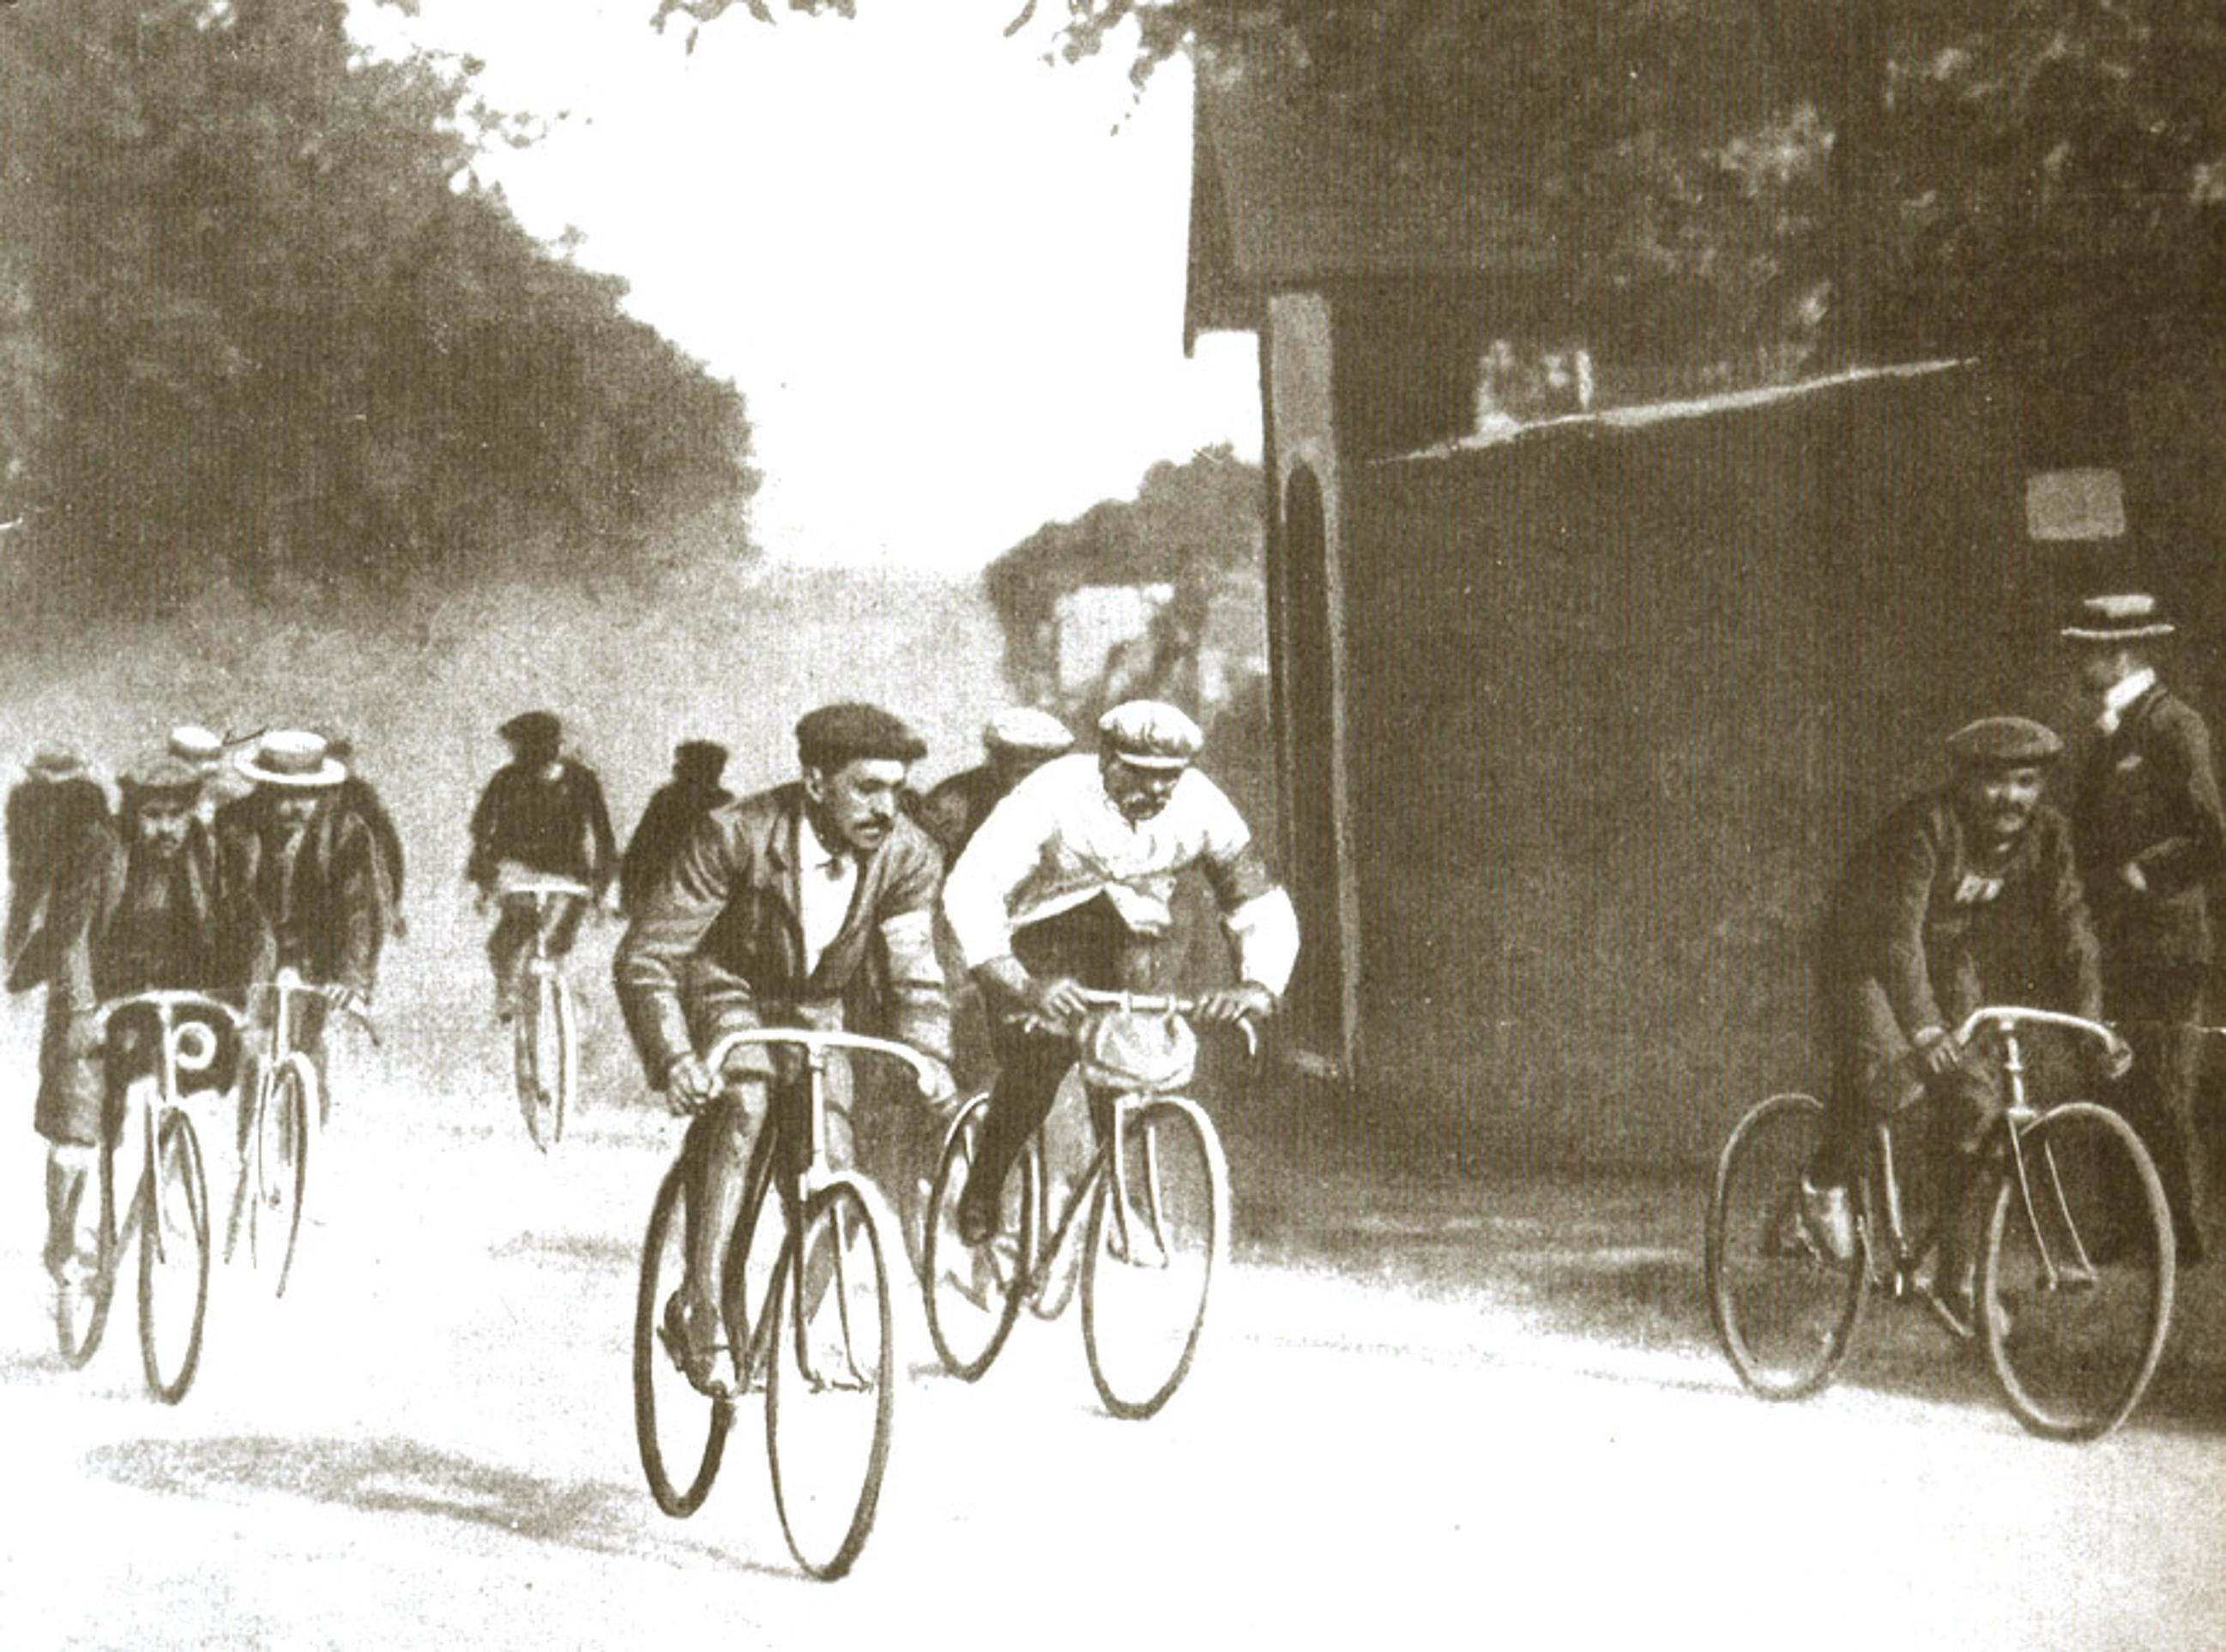 The first Tour de France